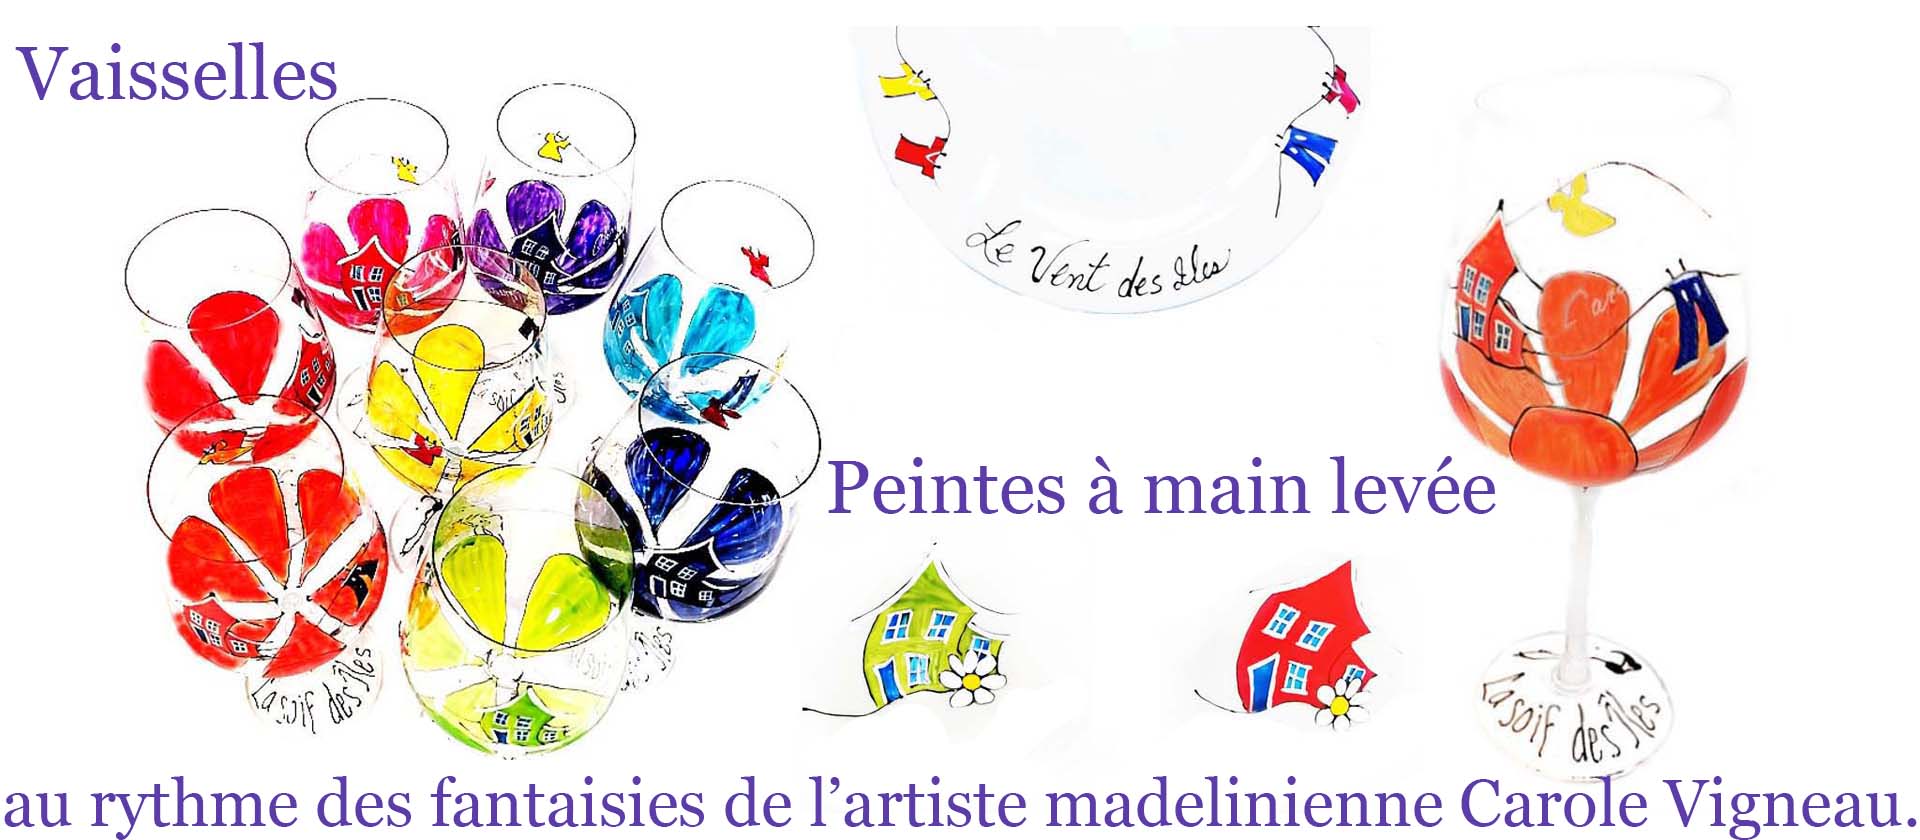 Bannière  Vaisselles peintes à main levée  au rythme des fantaisies de l’artiste madelinienne Carole Vigneau.